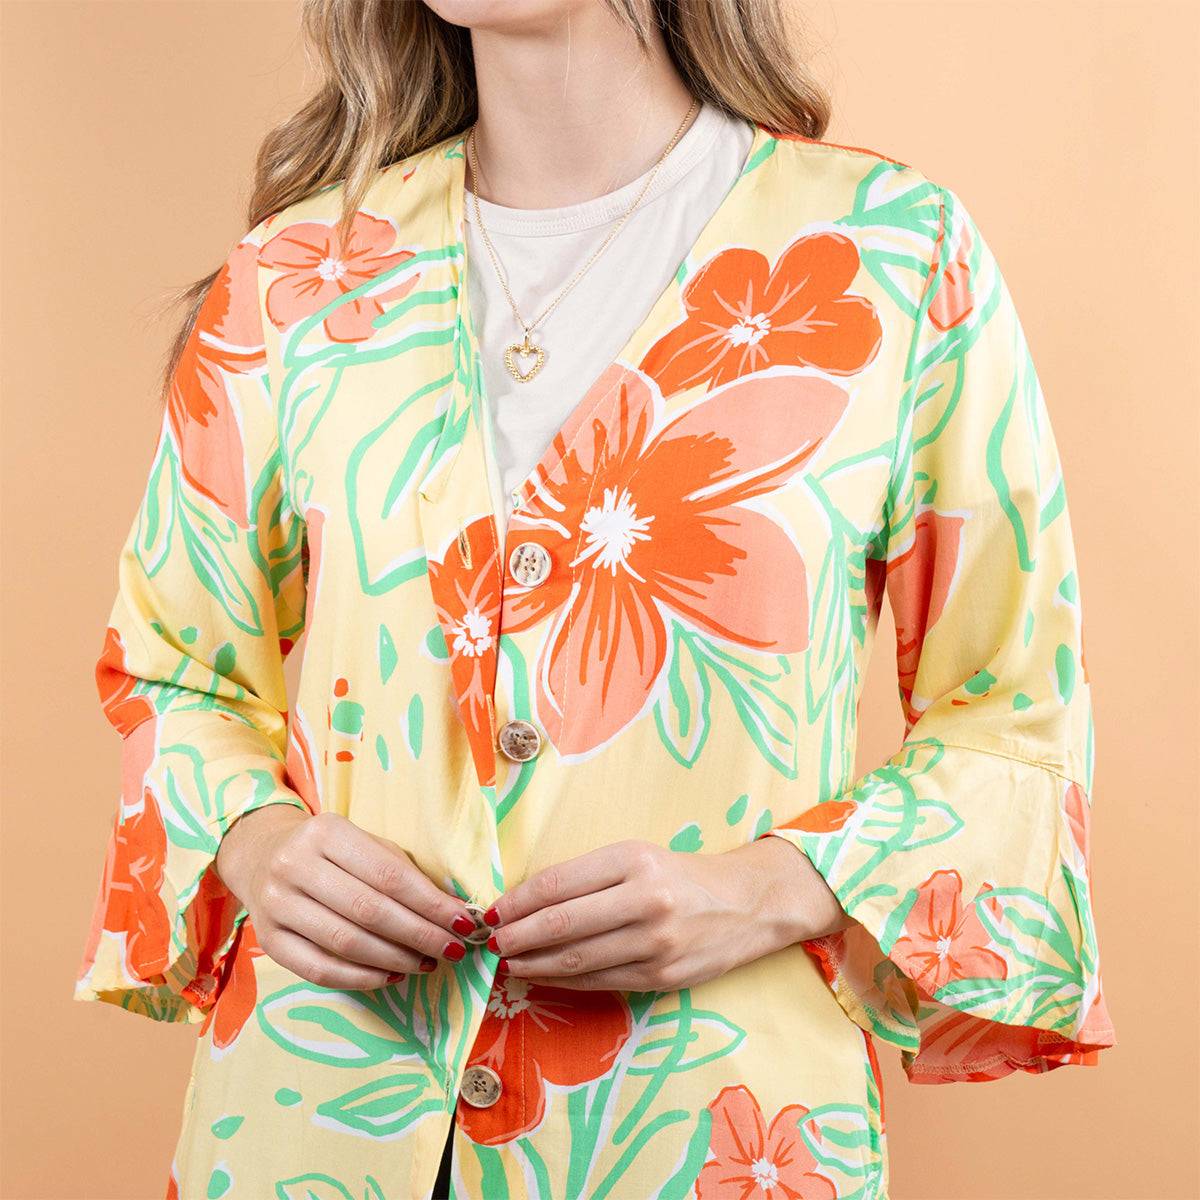 Kimono multicolor con estampado de flores